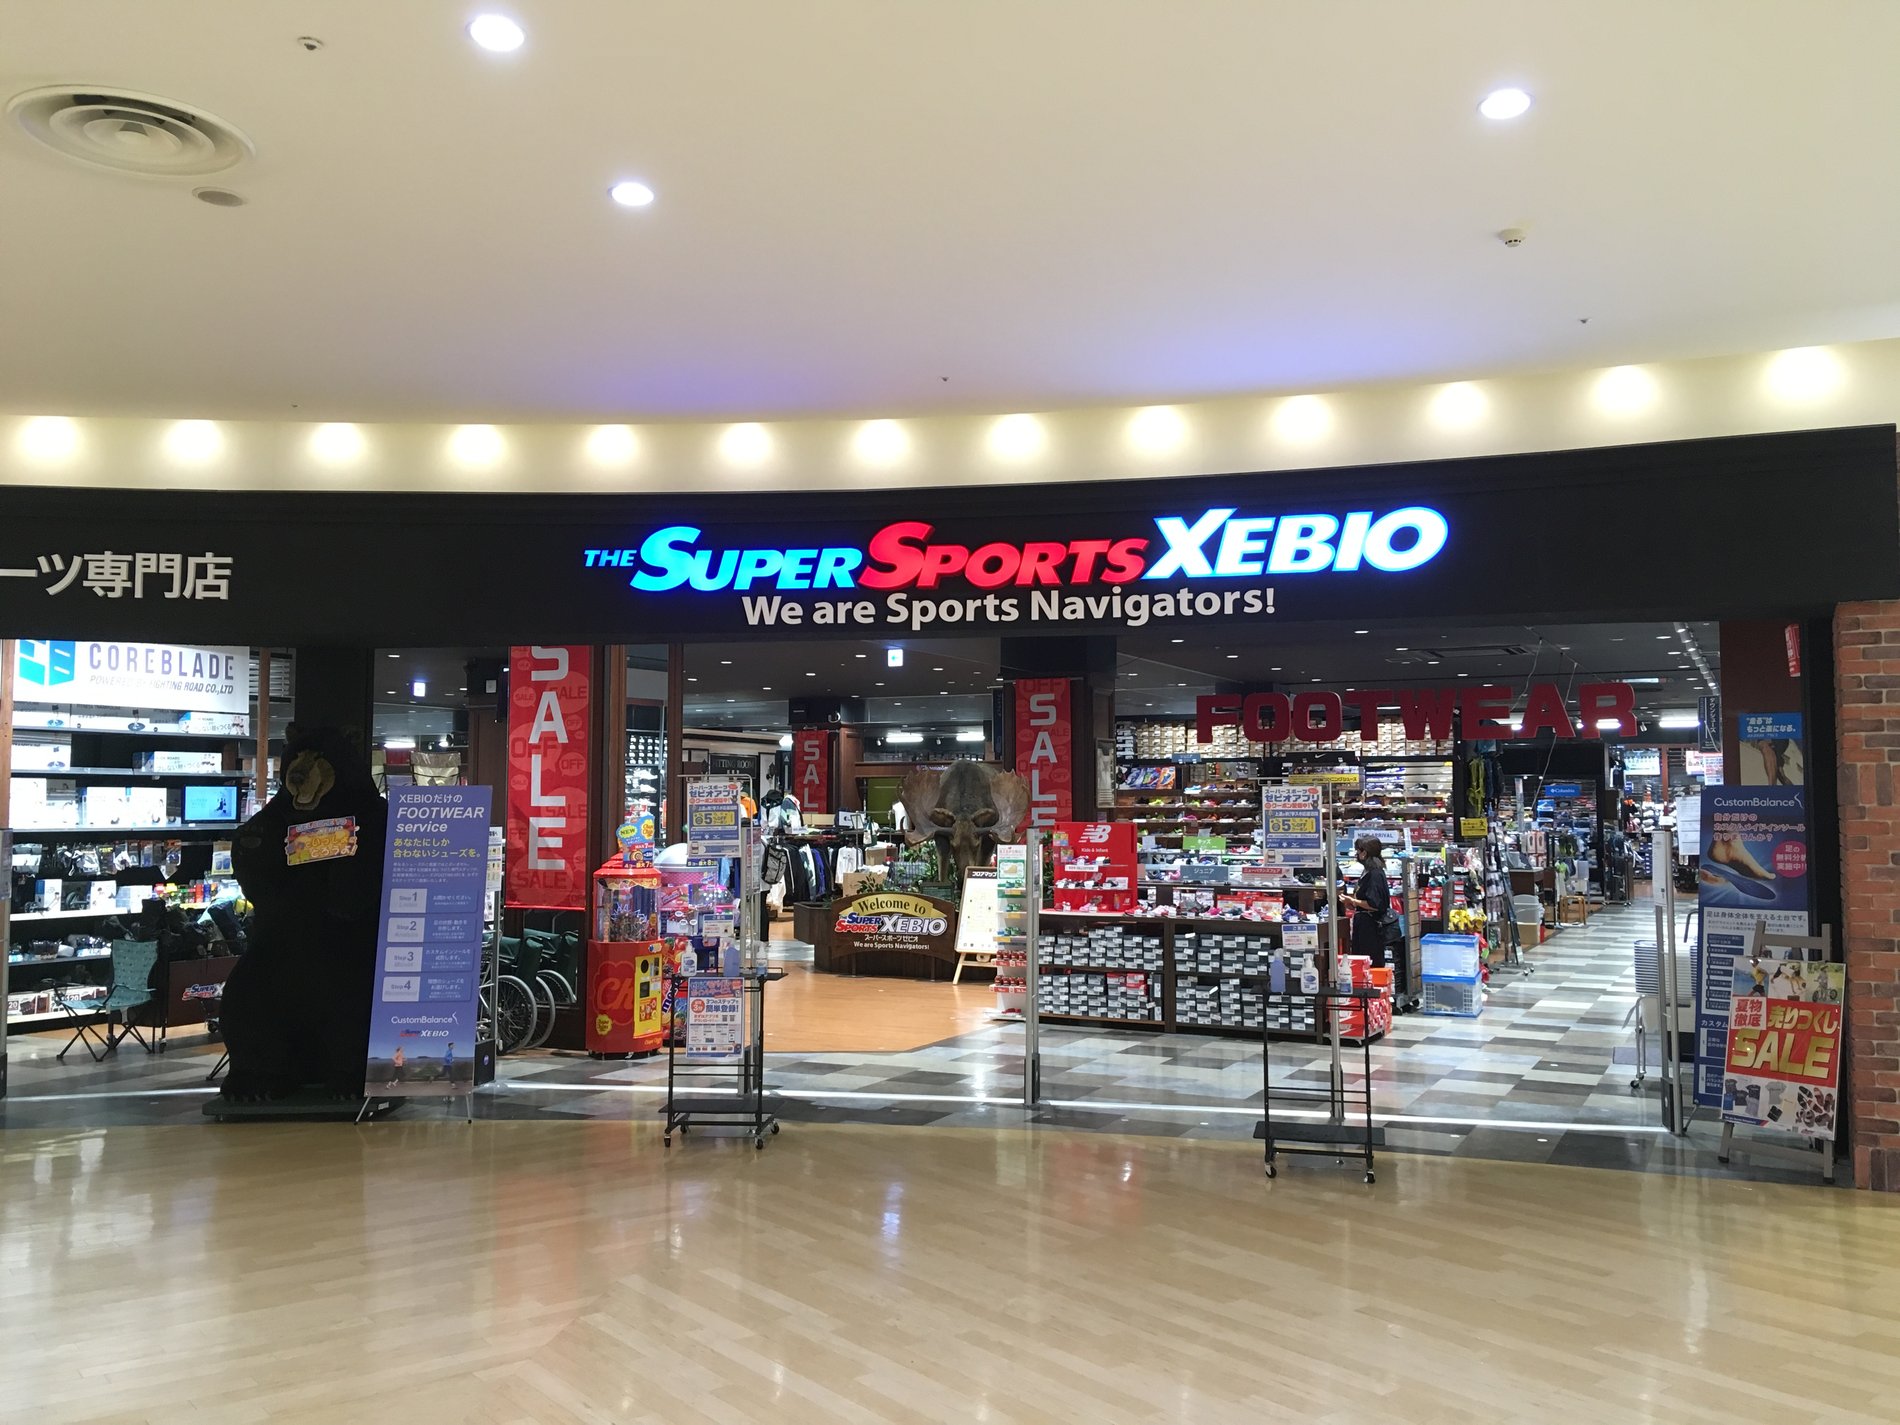 スーパースポーツゼビオ アリオ橋本店 神奈川県 相模原市 Super Sports Xebio スーパースポーツゼビオ ゼビオスポーツ オフィシャルサイト